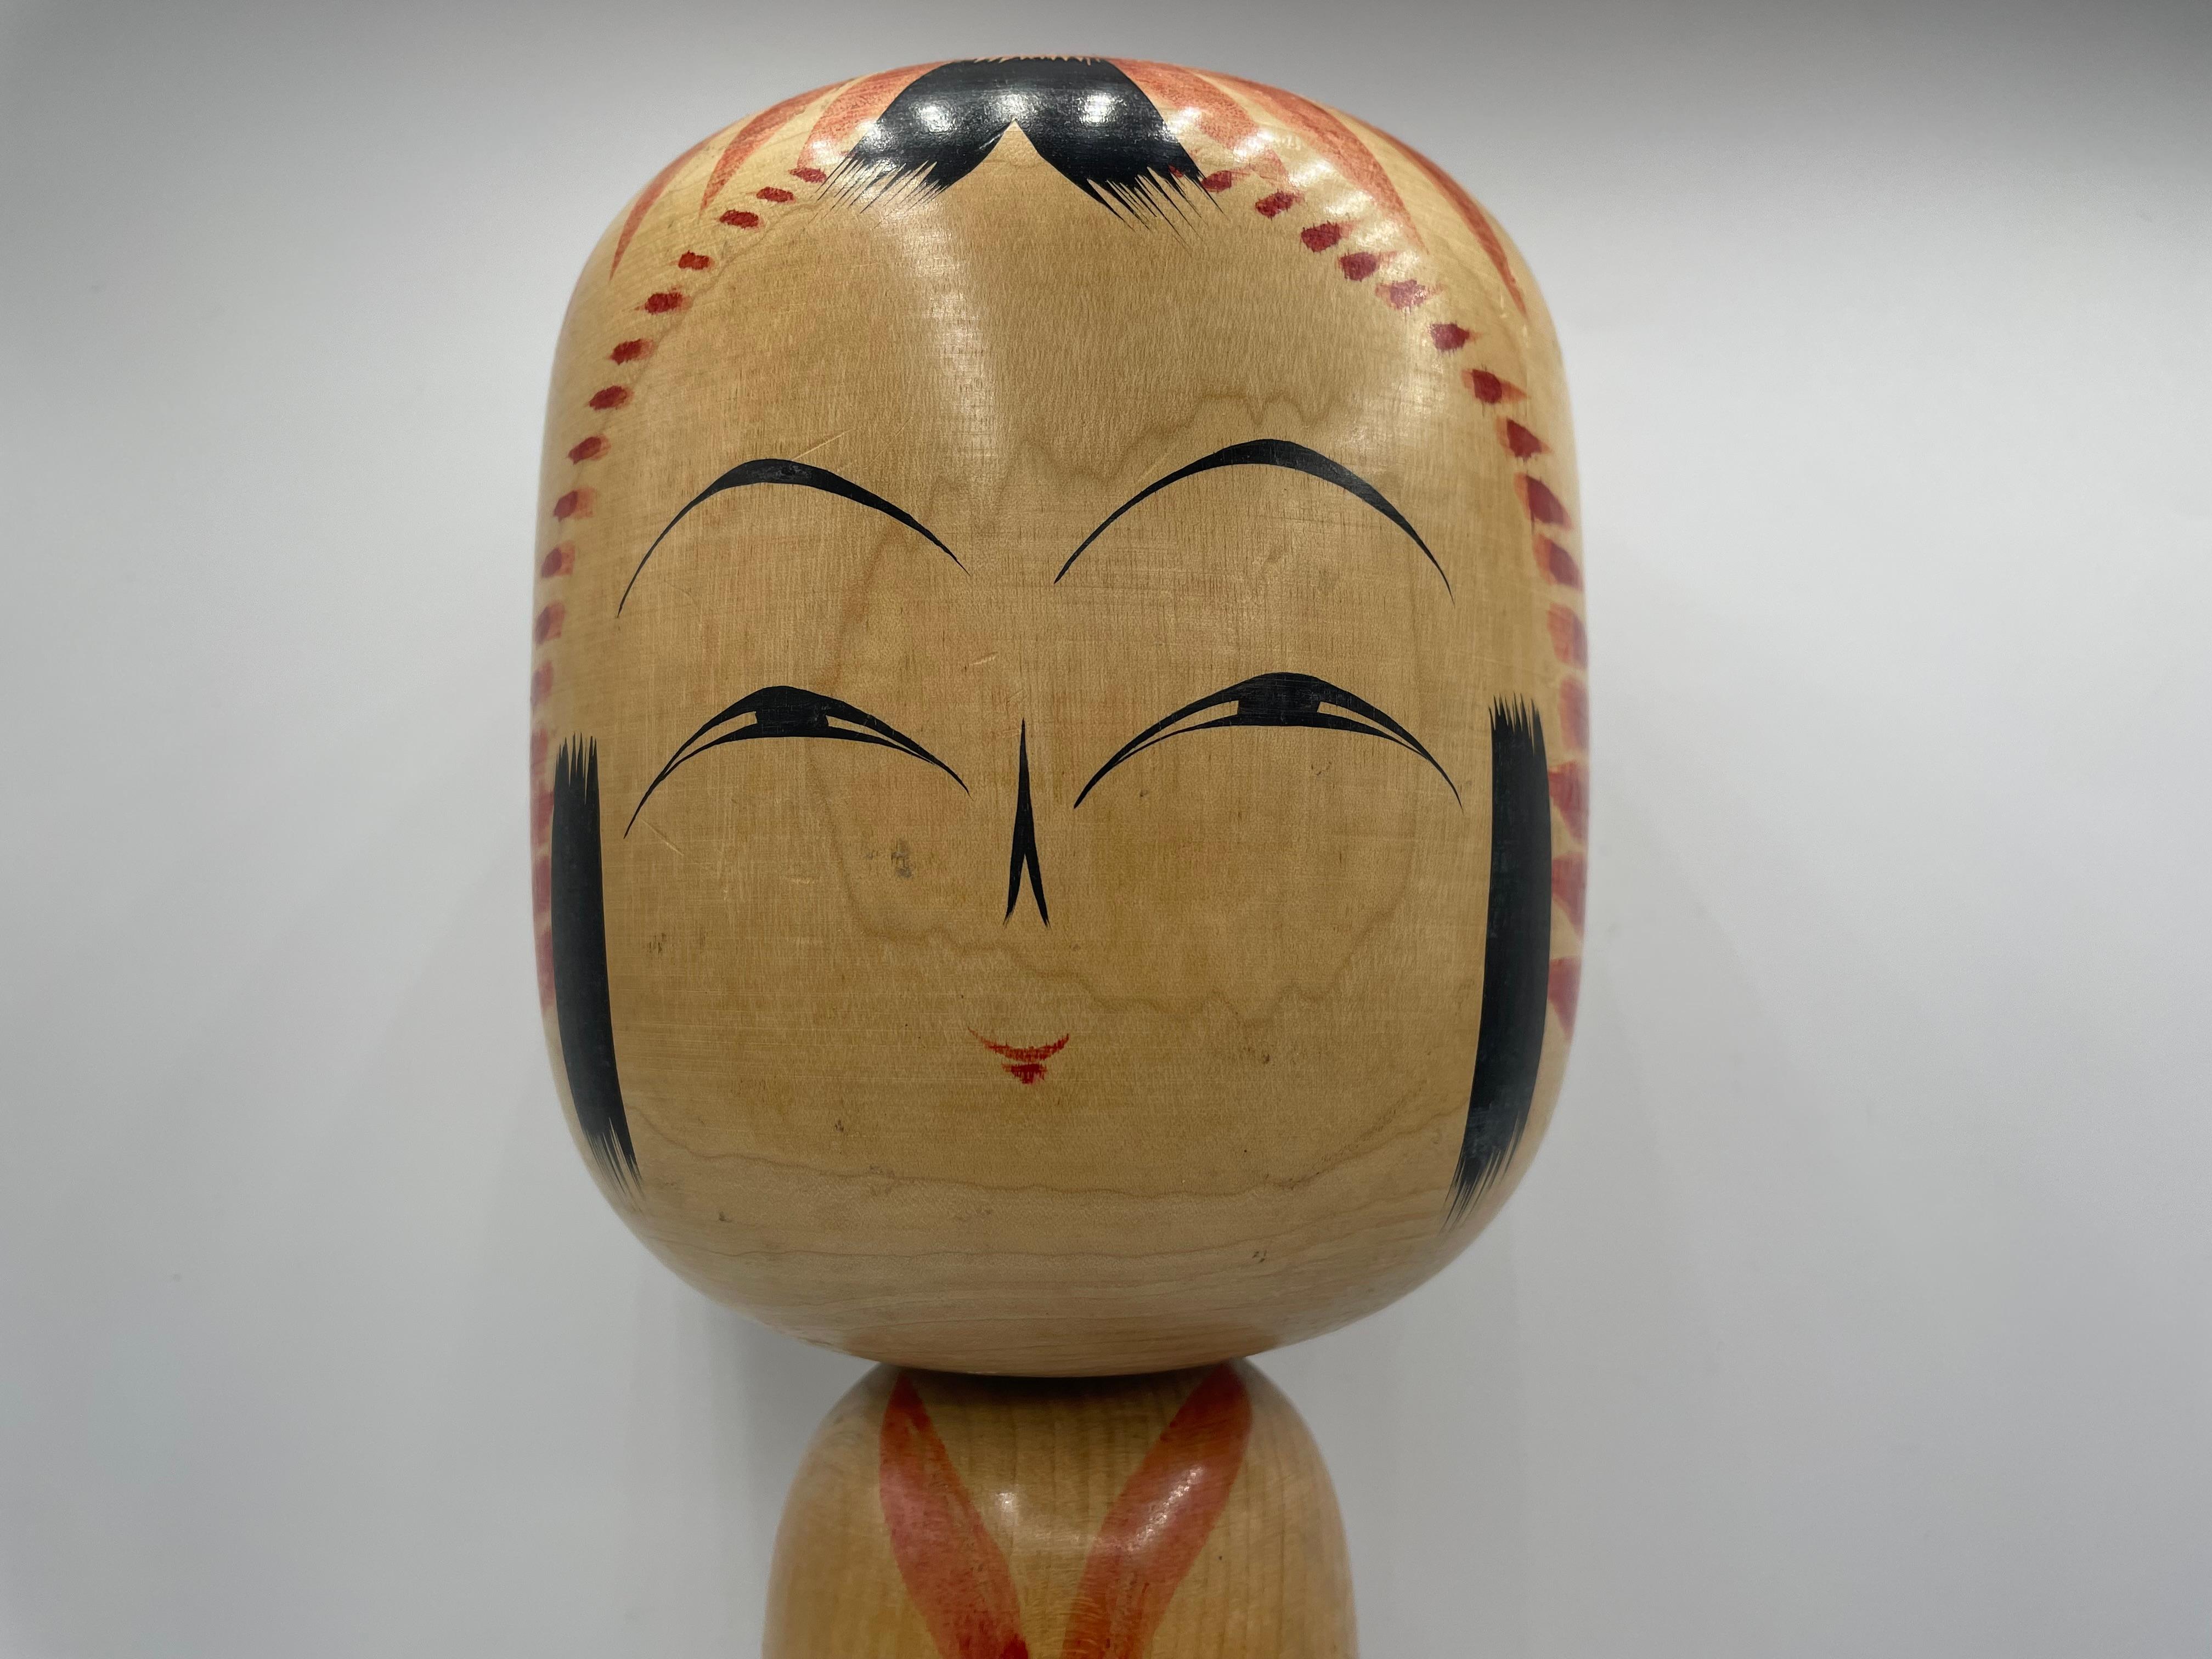 Il s'agit d'une poupée en bois appelée Kokeshi en japonais.
Cette kokeshi a été réalisée au Japon dans les années 1970 par l'artiste Kyuichi OMORI.
Il est né le 30 novembre 1932. Sa signature est inscrite au bas de cette poupée kokeshi.
Cette